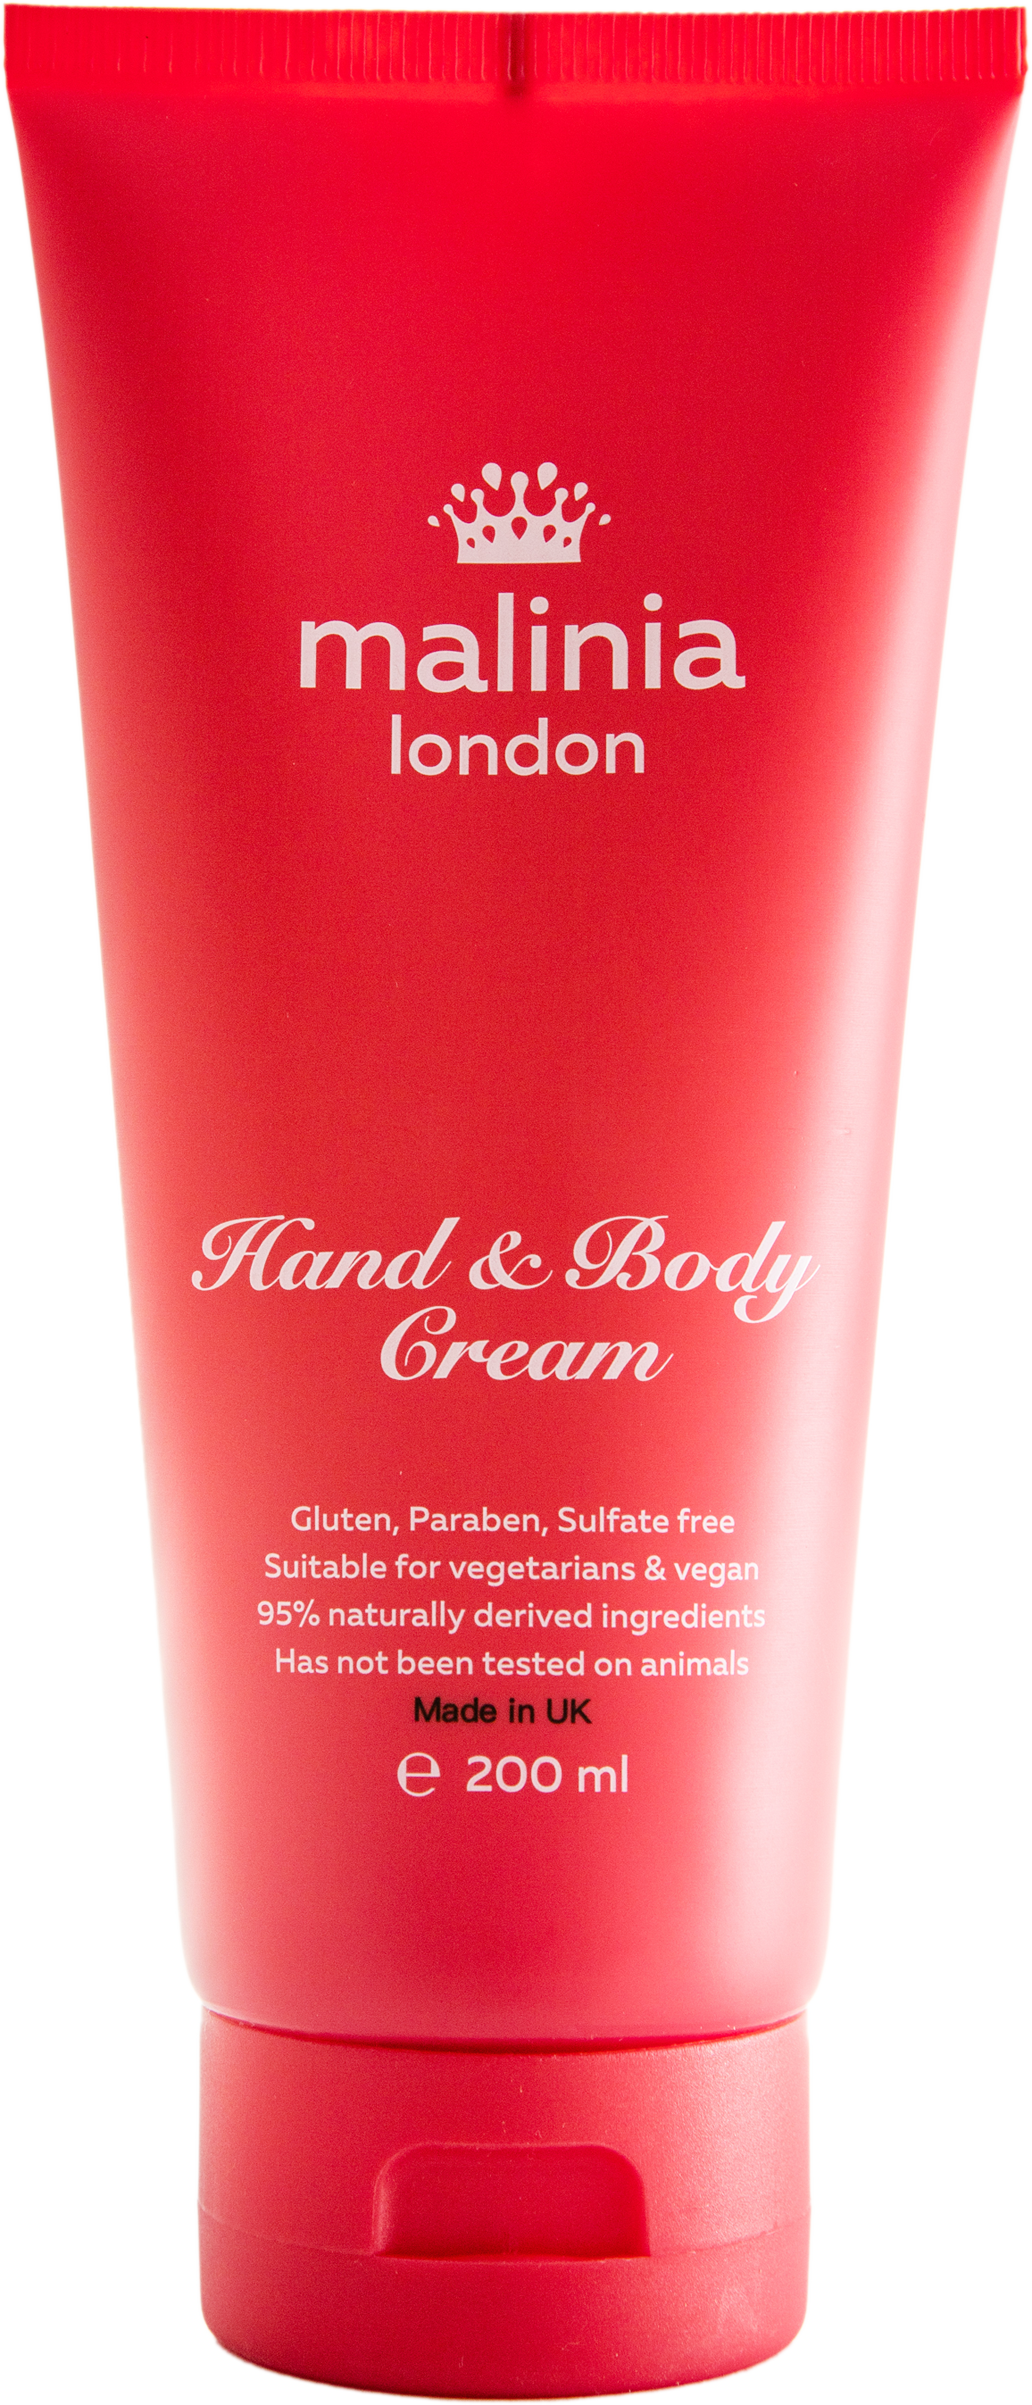 Hand & Body cream